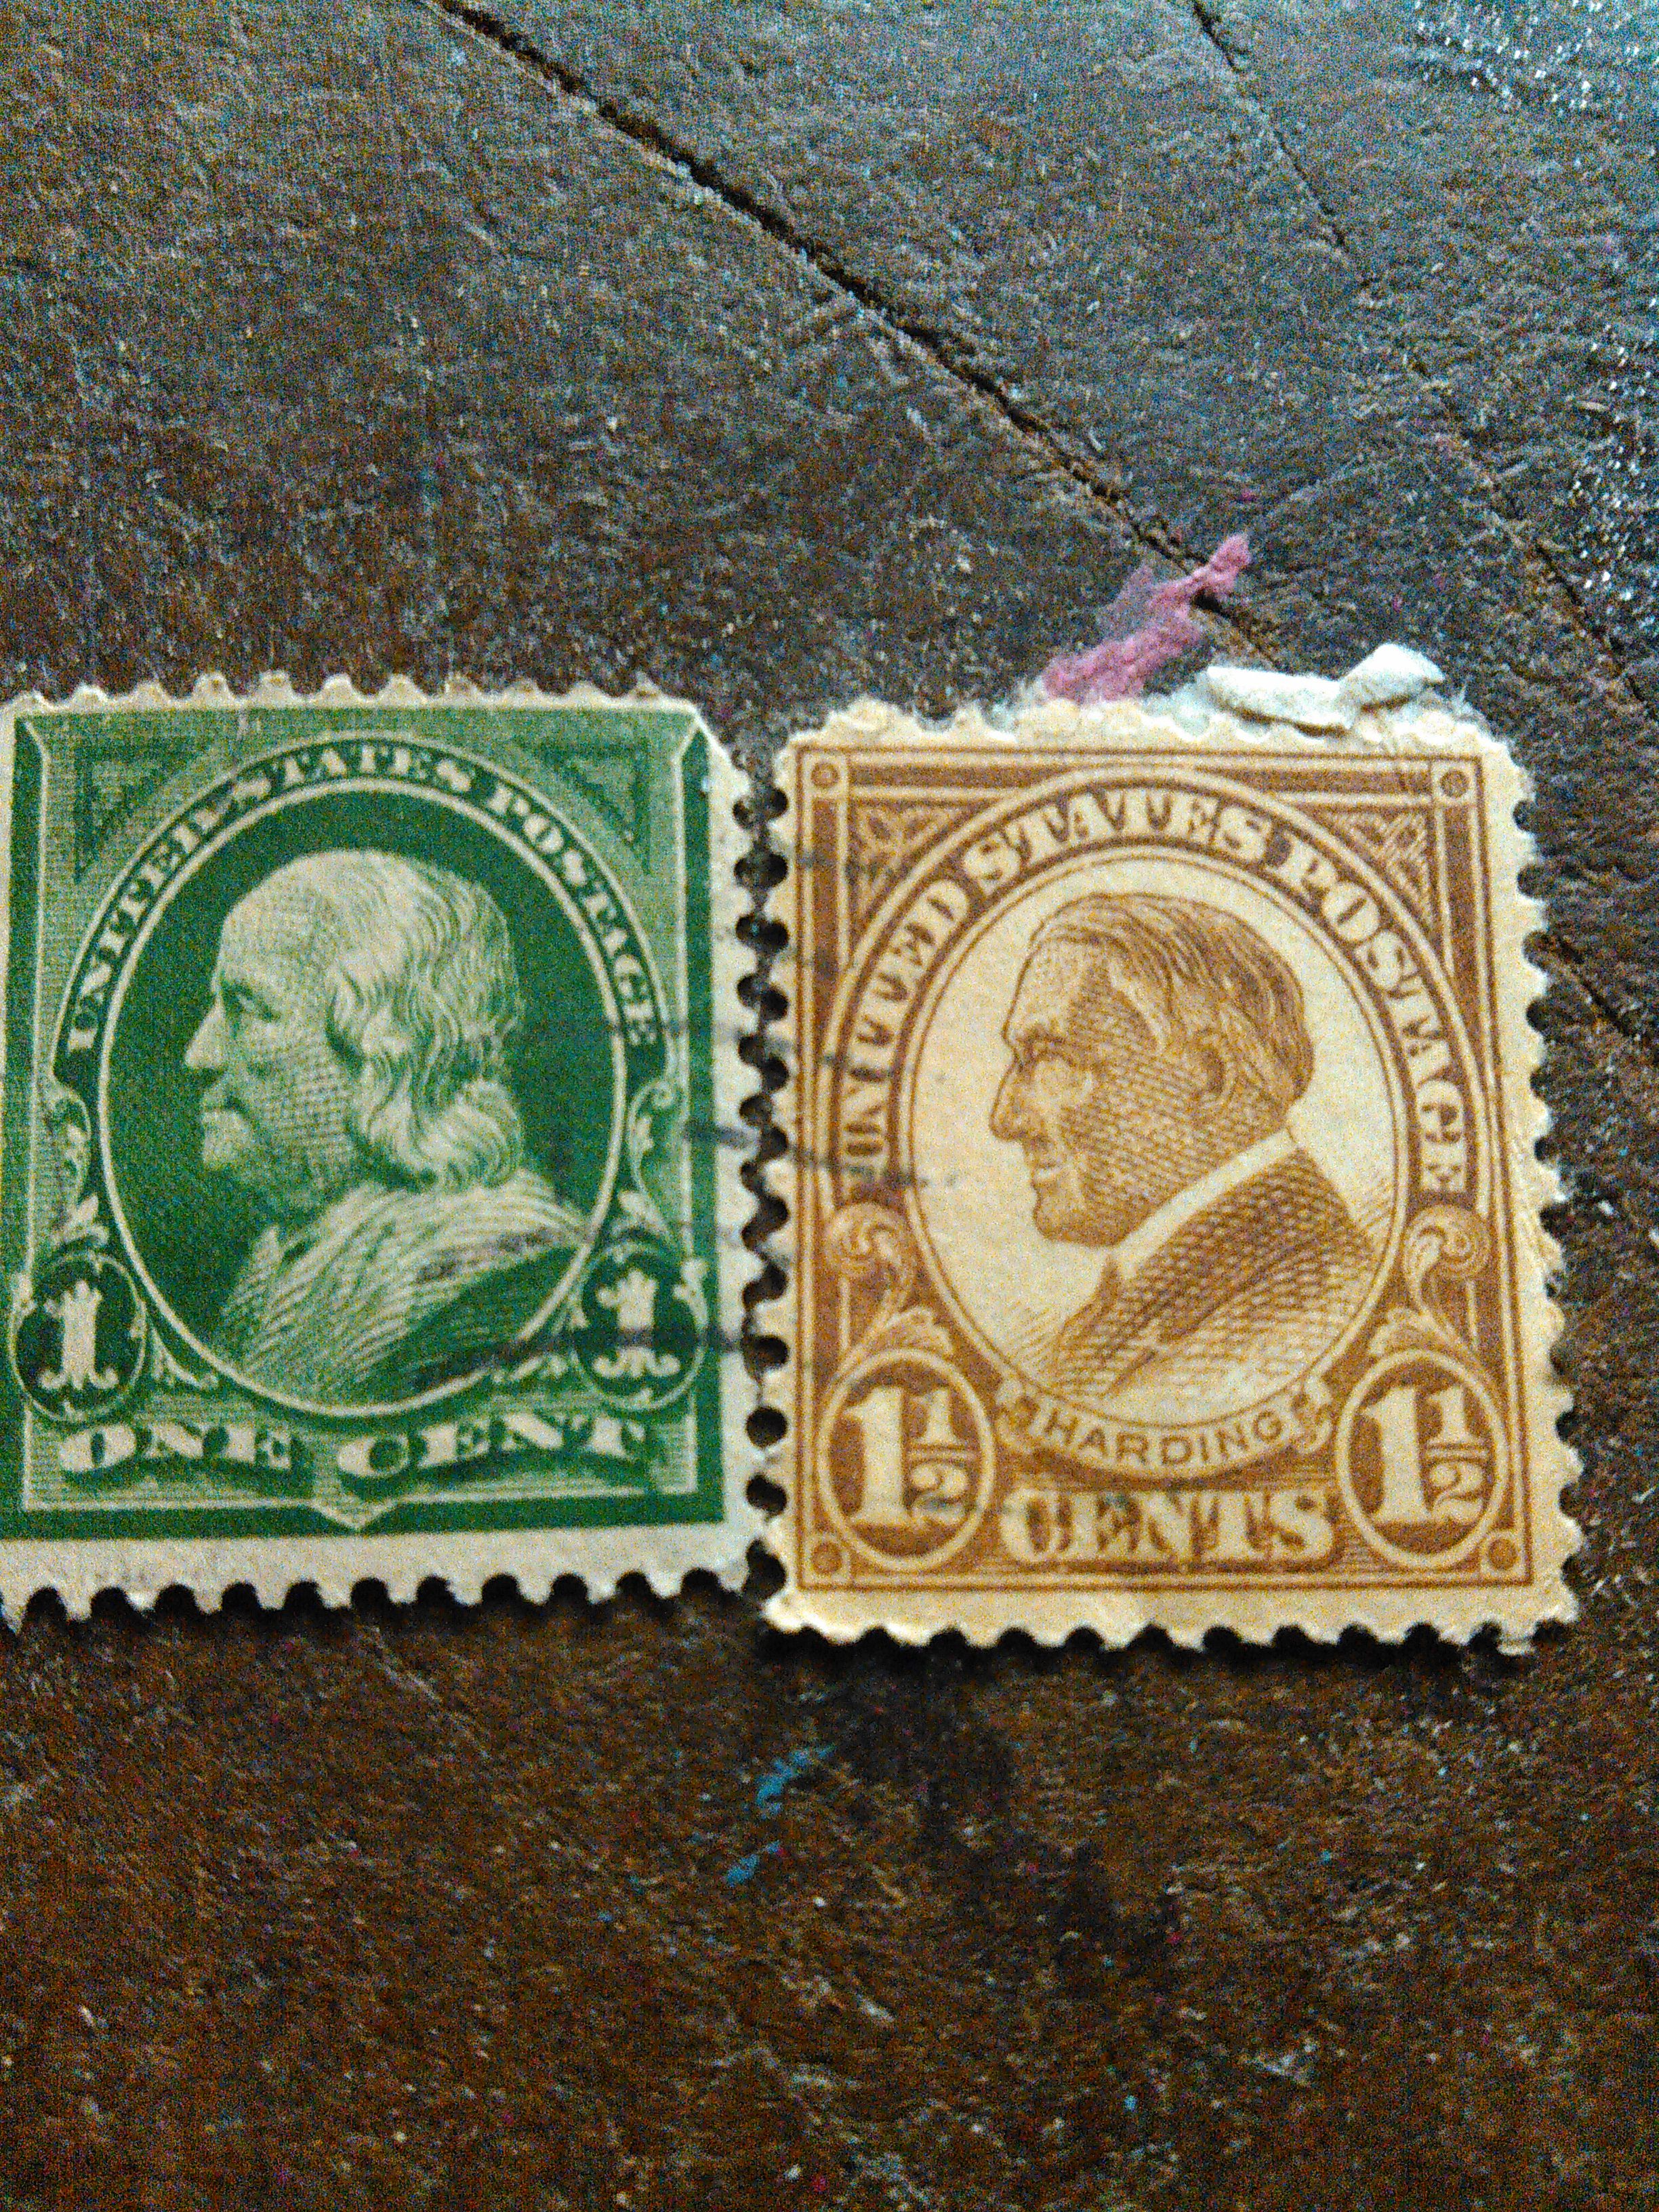 Vintage/Rare Postal Stamps for Sale in Las Vegas, NV - OfferUp